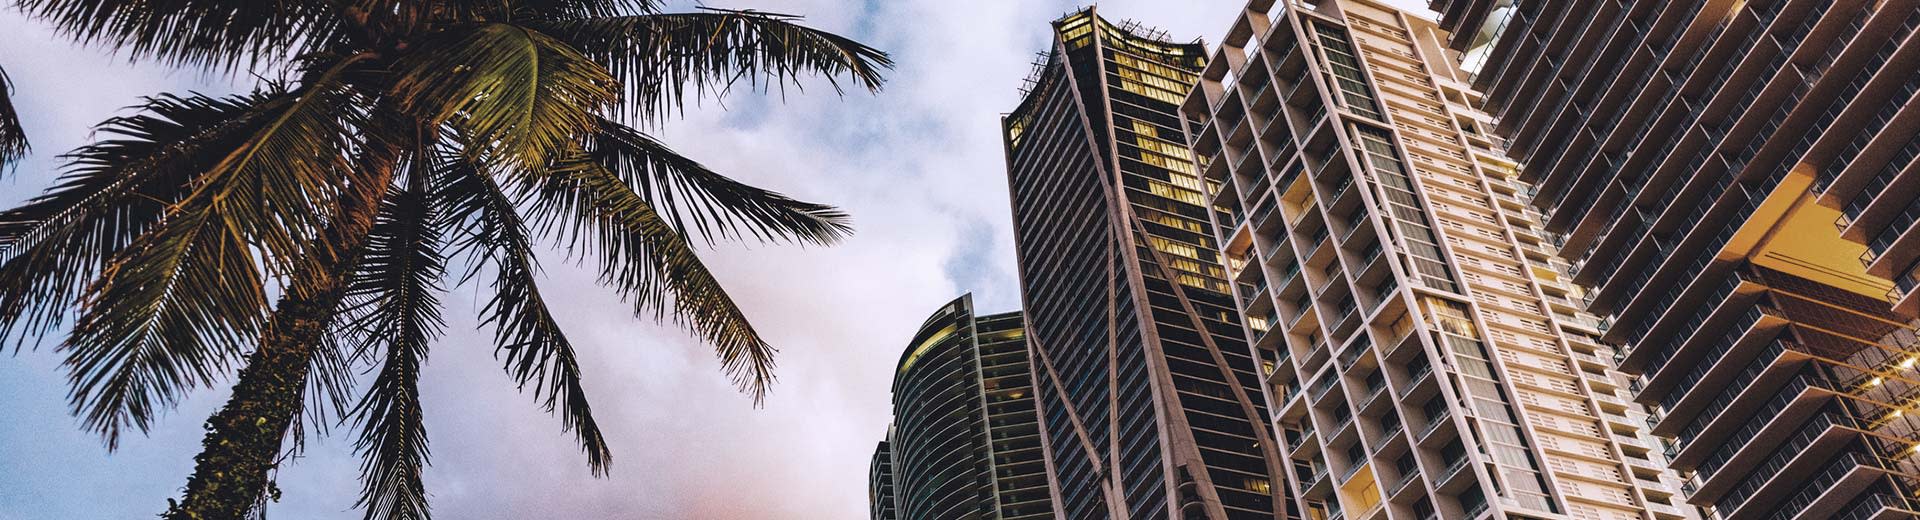 Palmen und Wolkenkratzer, die in Miami ausgestellt sind.